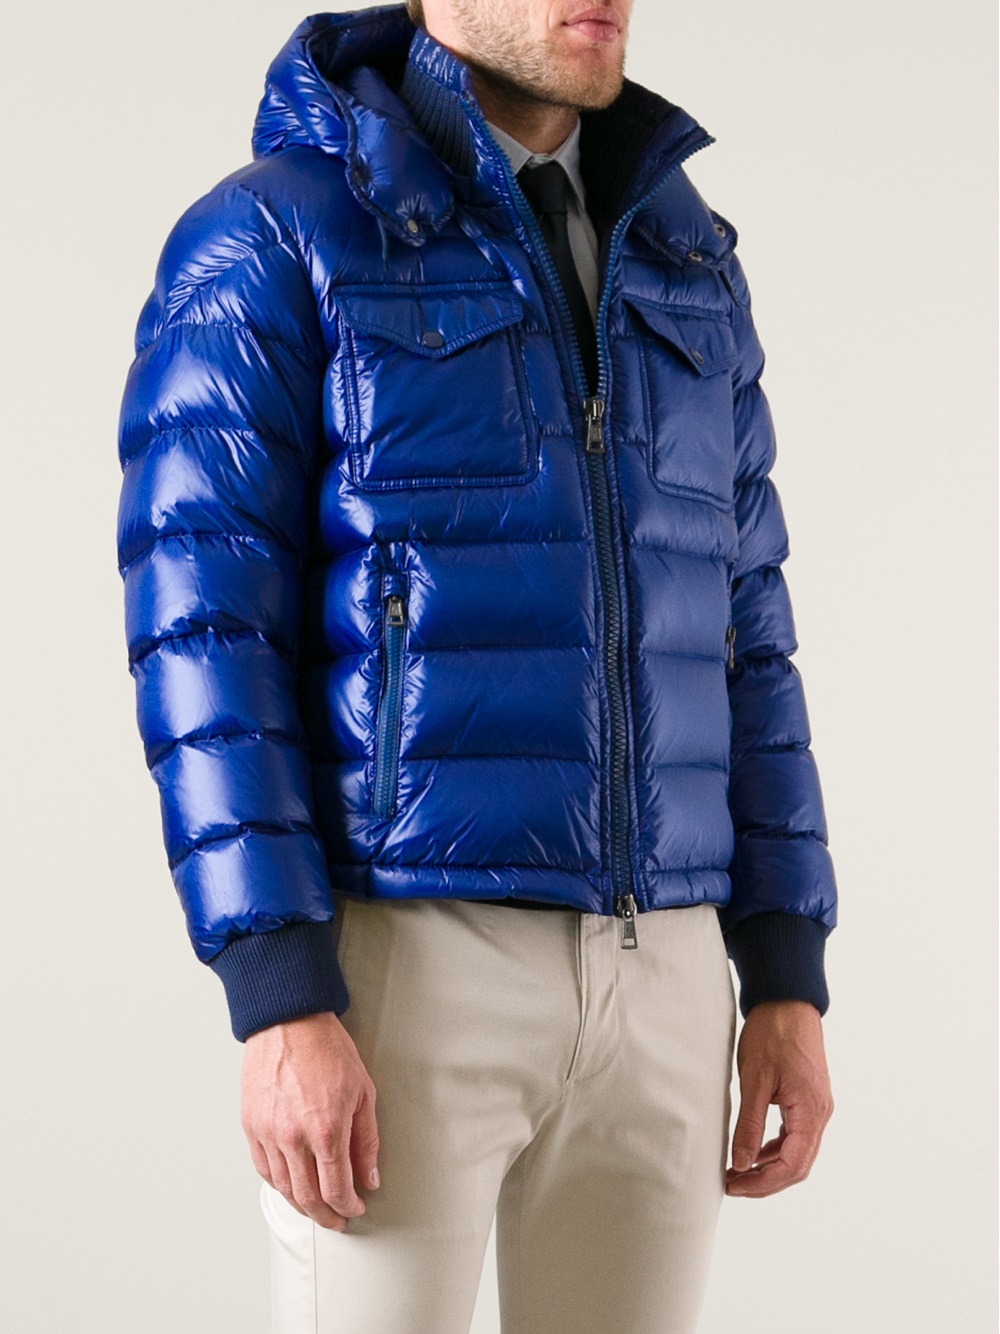 Moncler Fedor Jacket in Blue for Men - Lyst